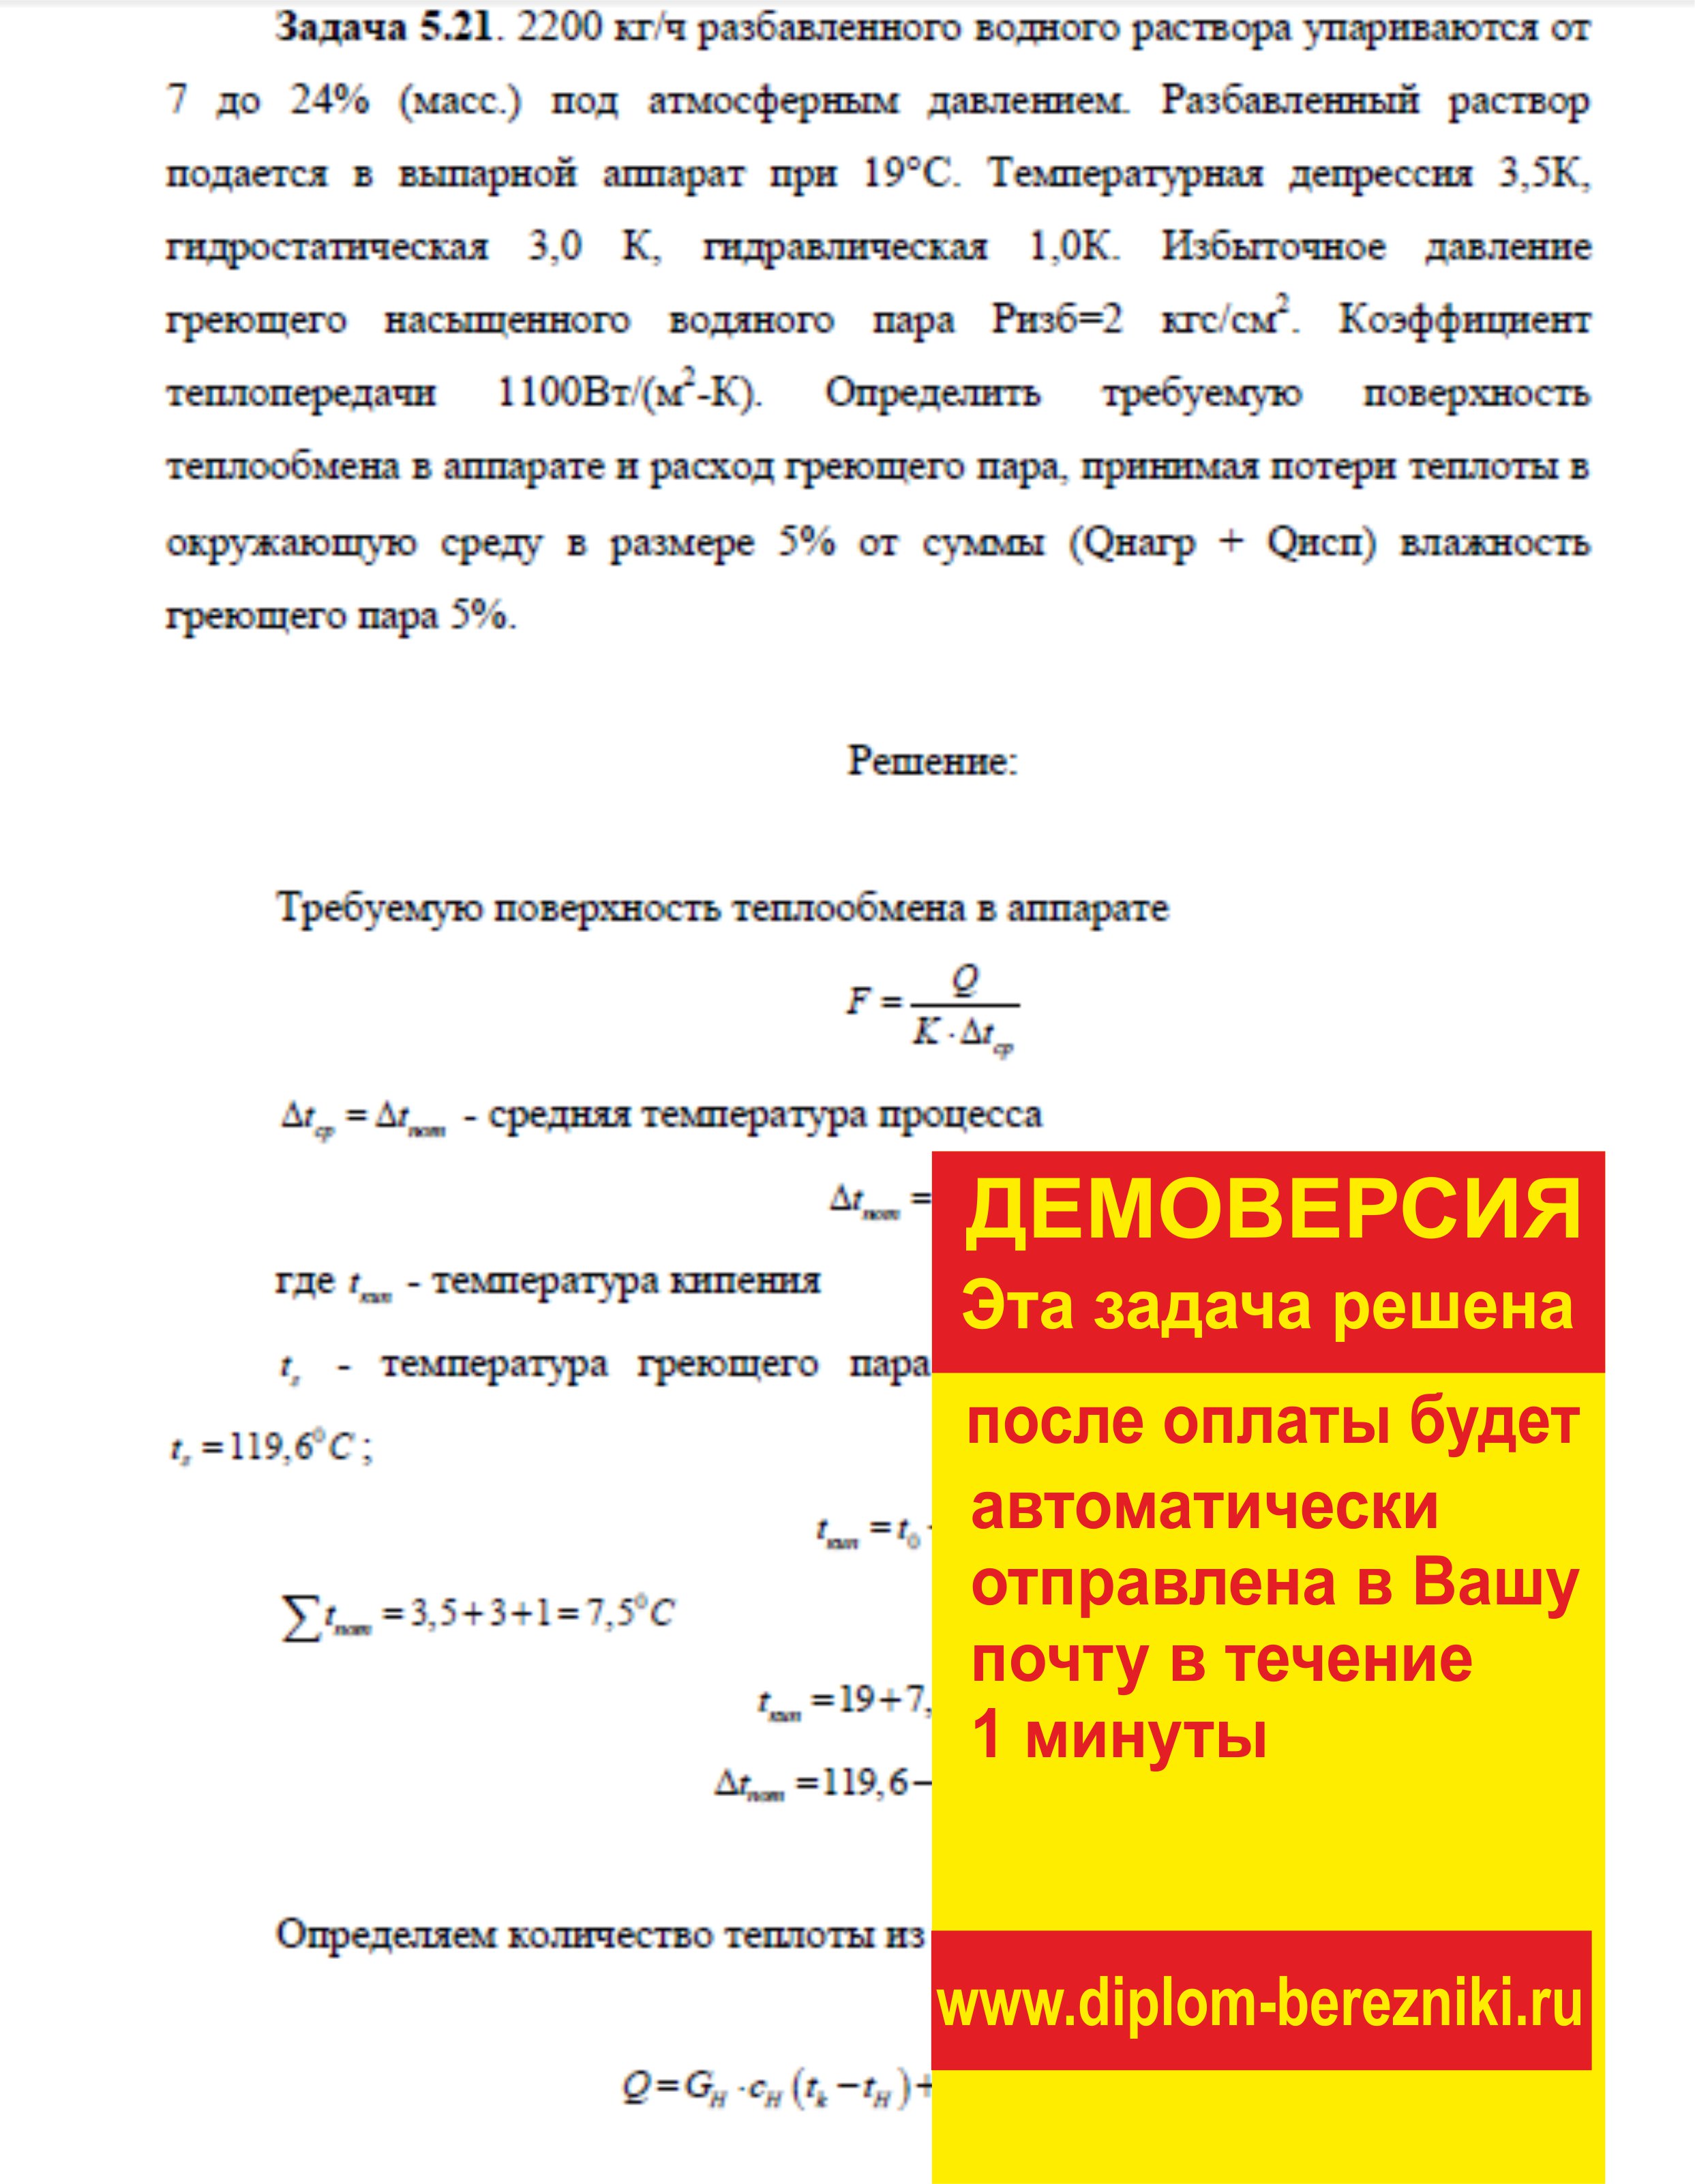 Решение задачи 5.21 по ПАХТ из задачника Павлова Романкова Носкова